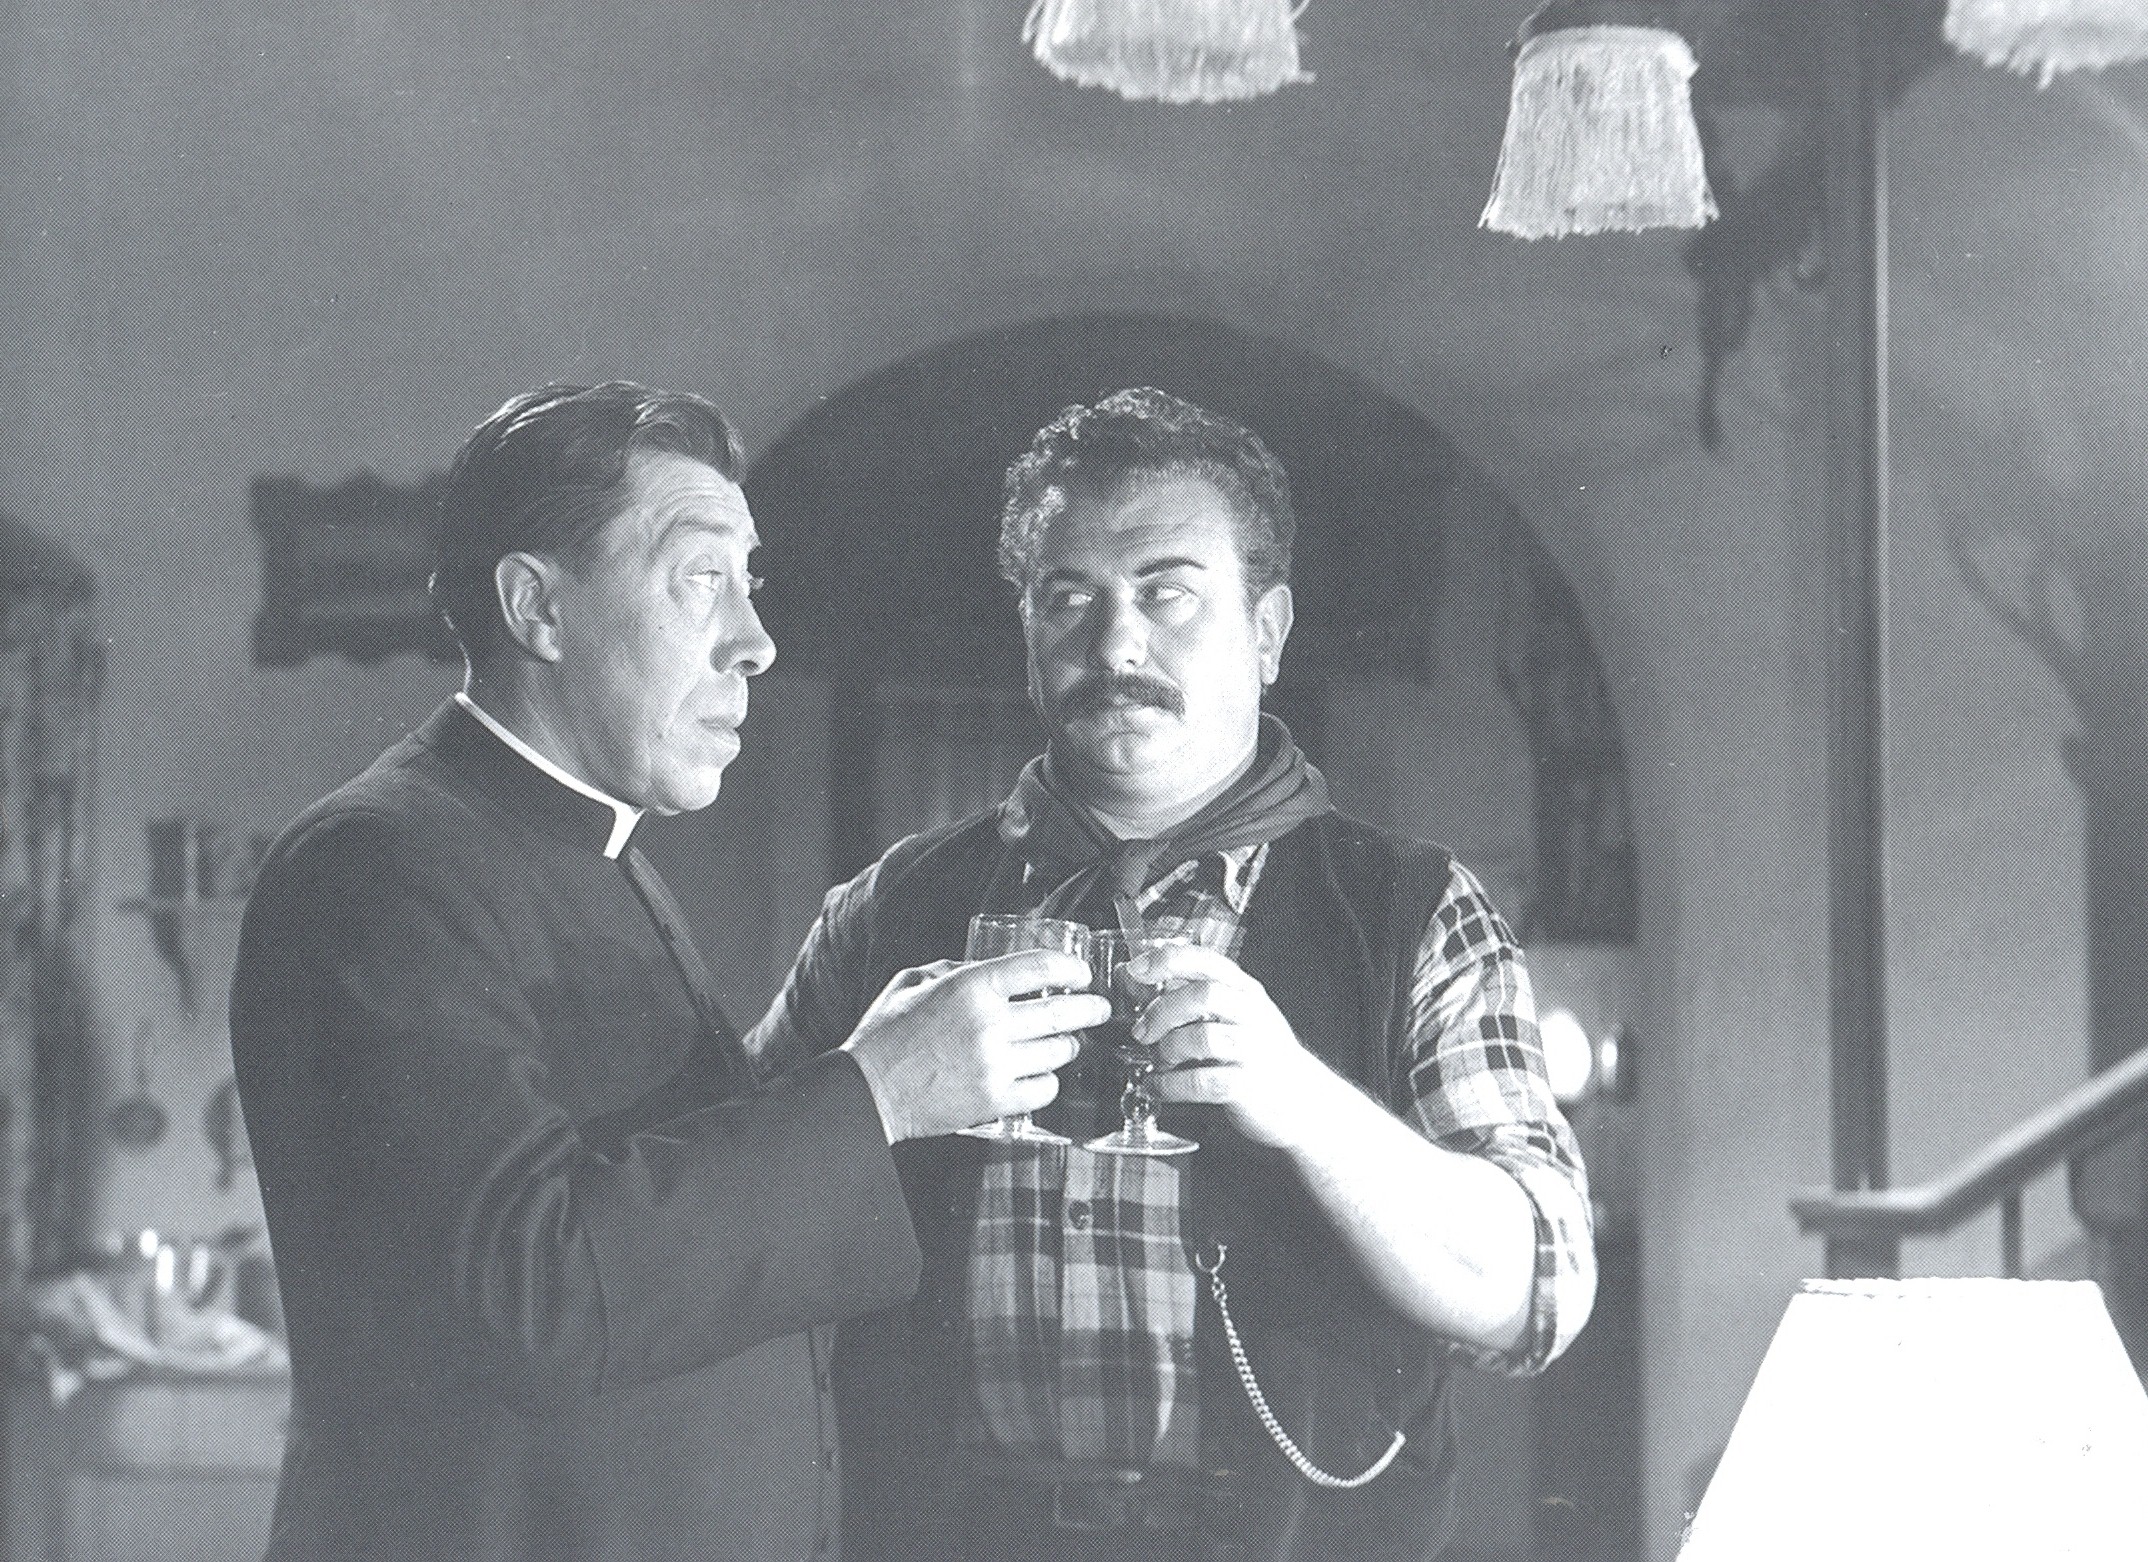 Don Camillo e Peppone